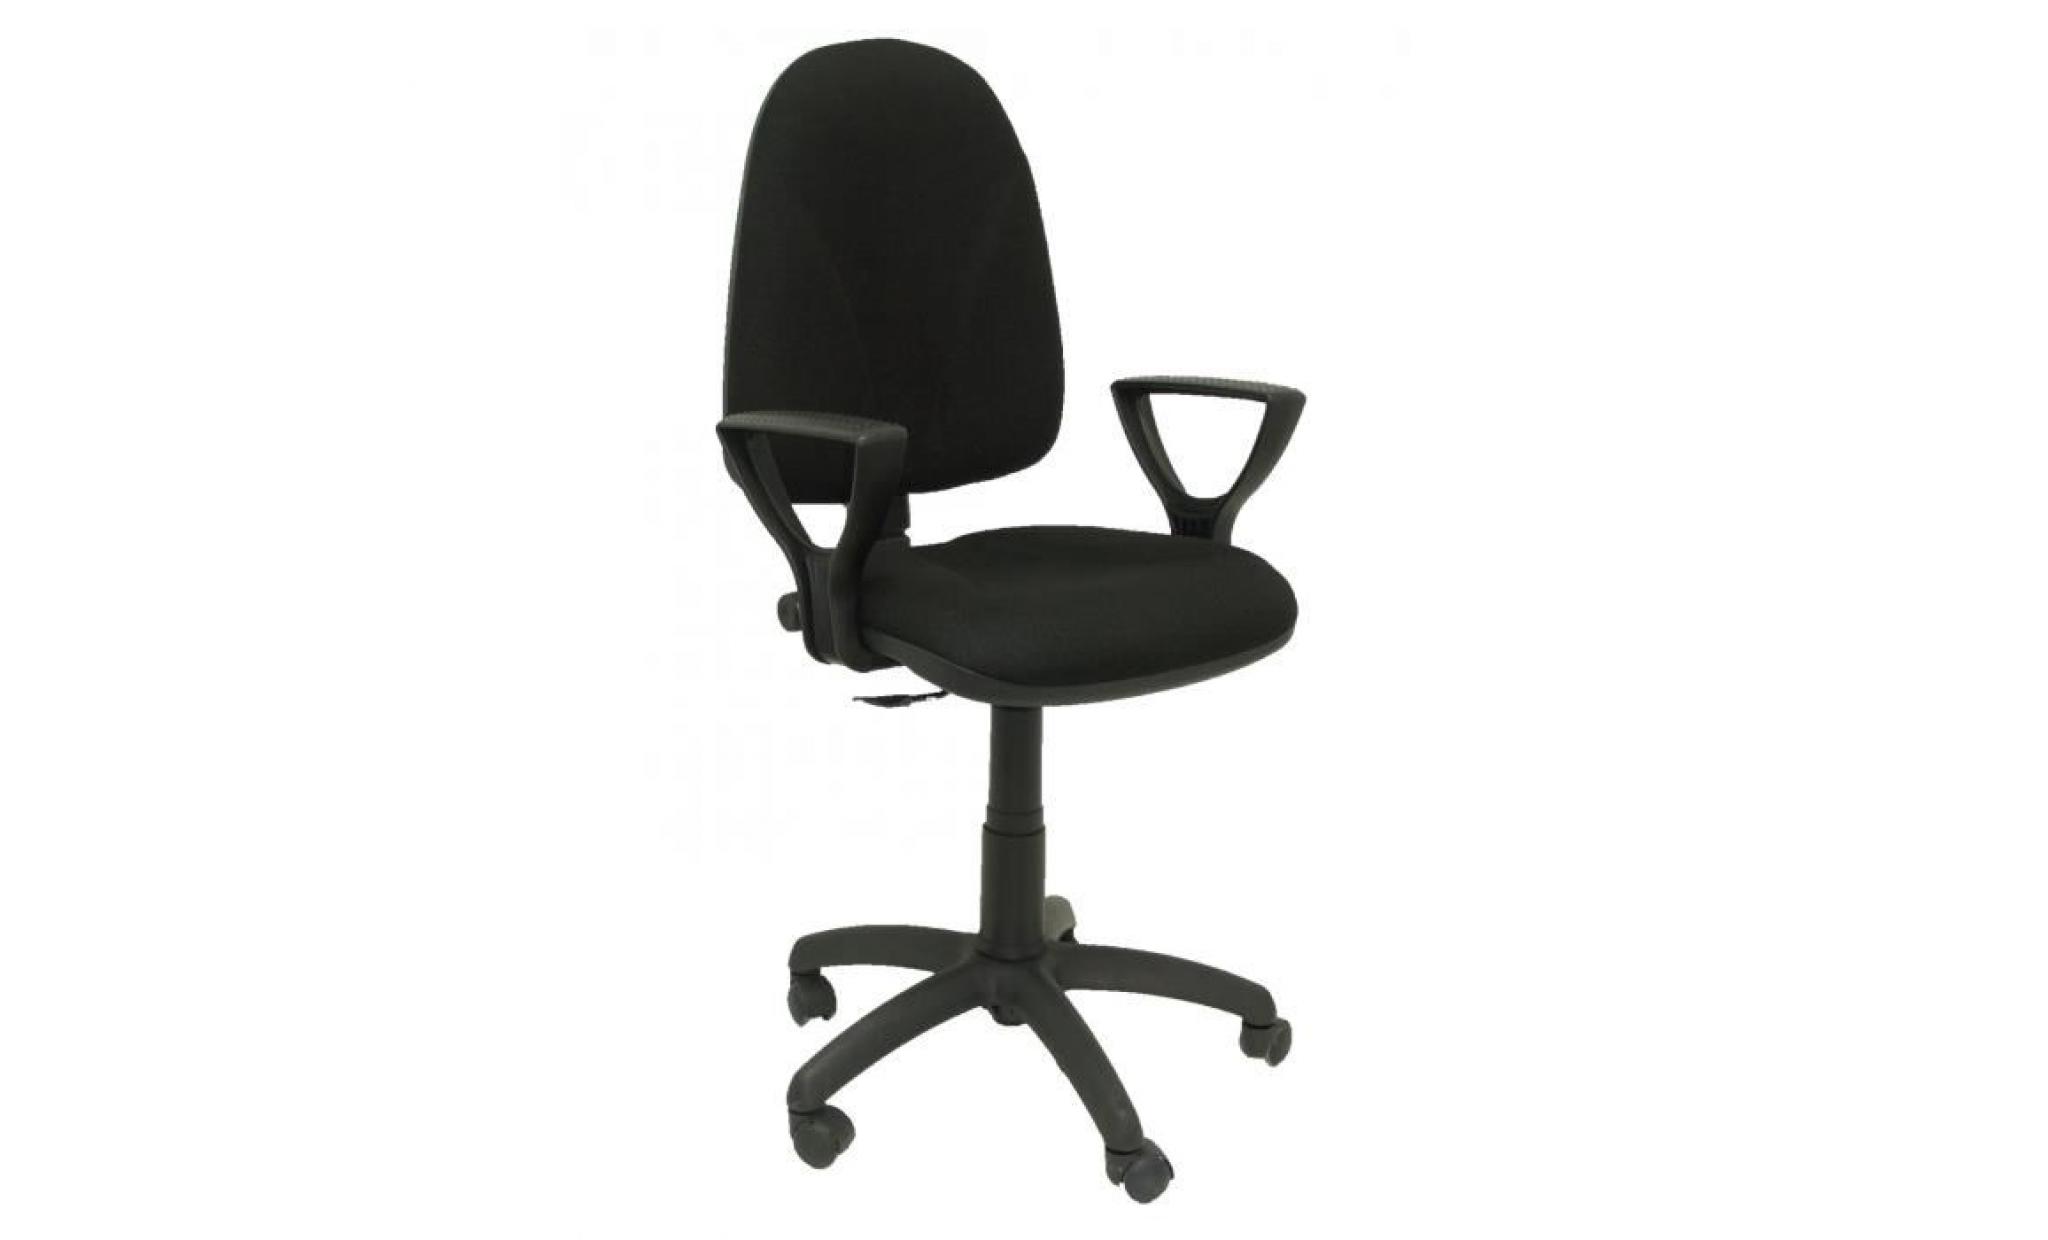 modello 1006ne algarra   sedia da ufficio ergonomica con meccanismo di contatto permanente e regolabile in altezza   sedile e